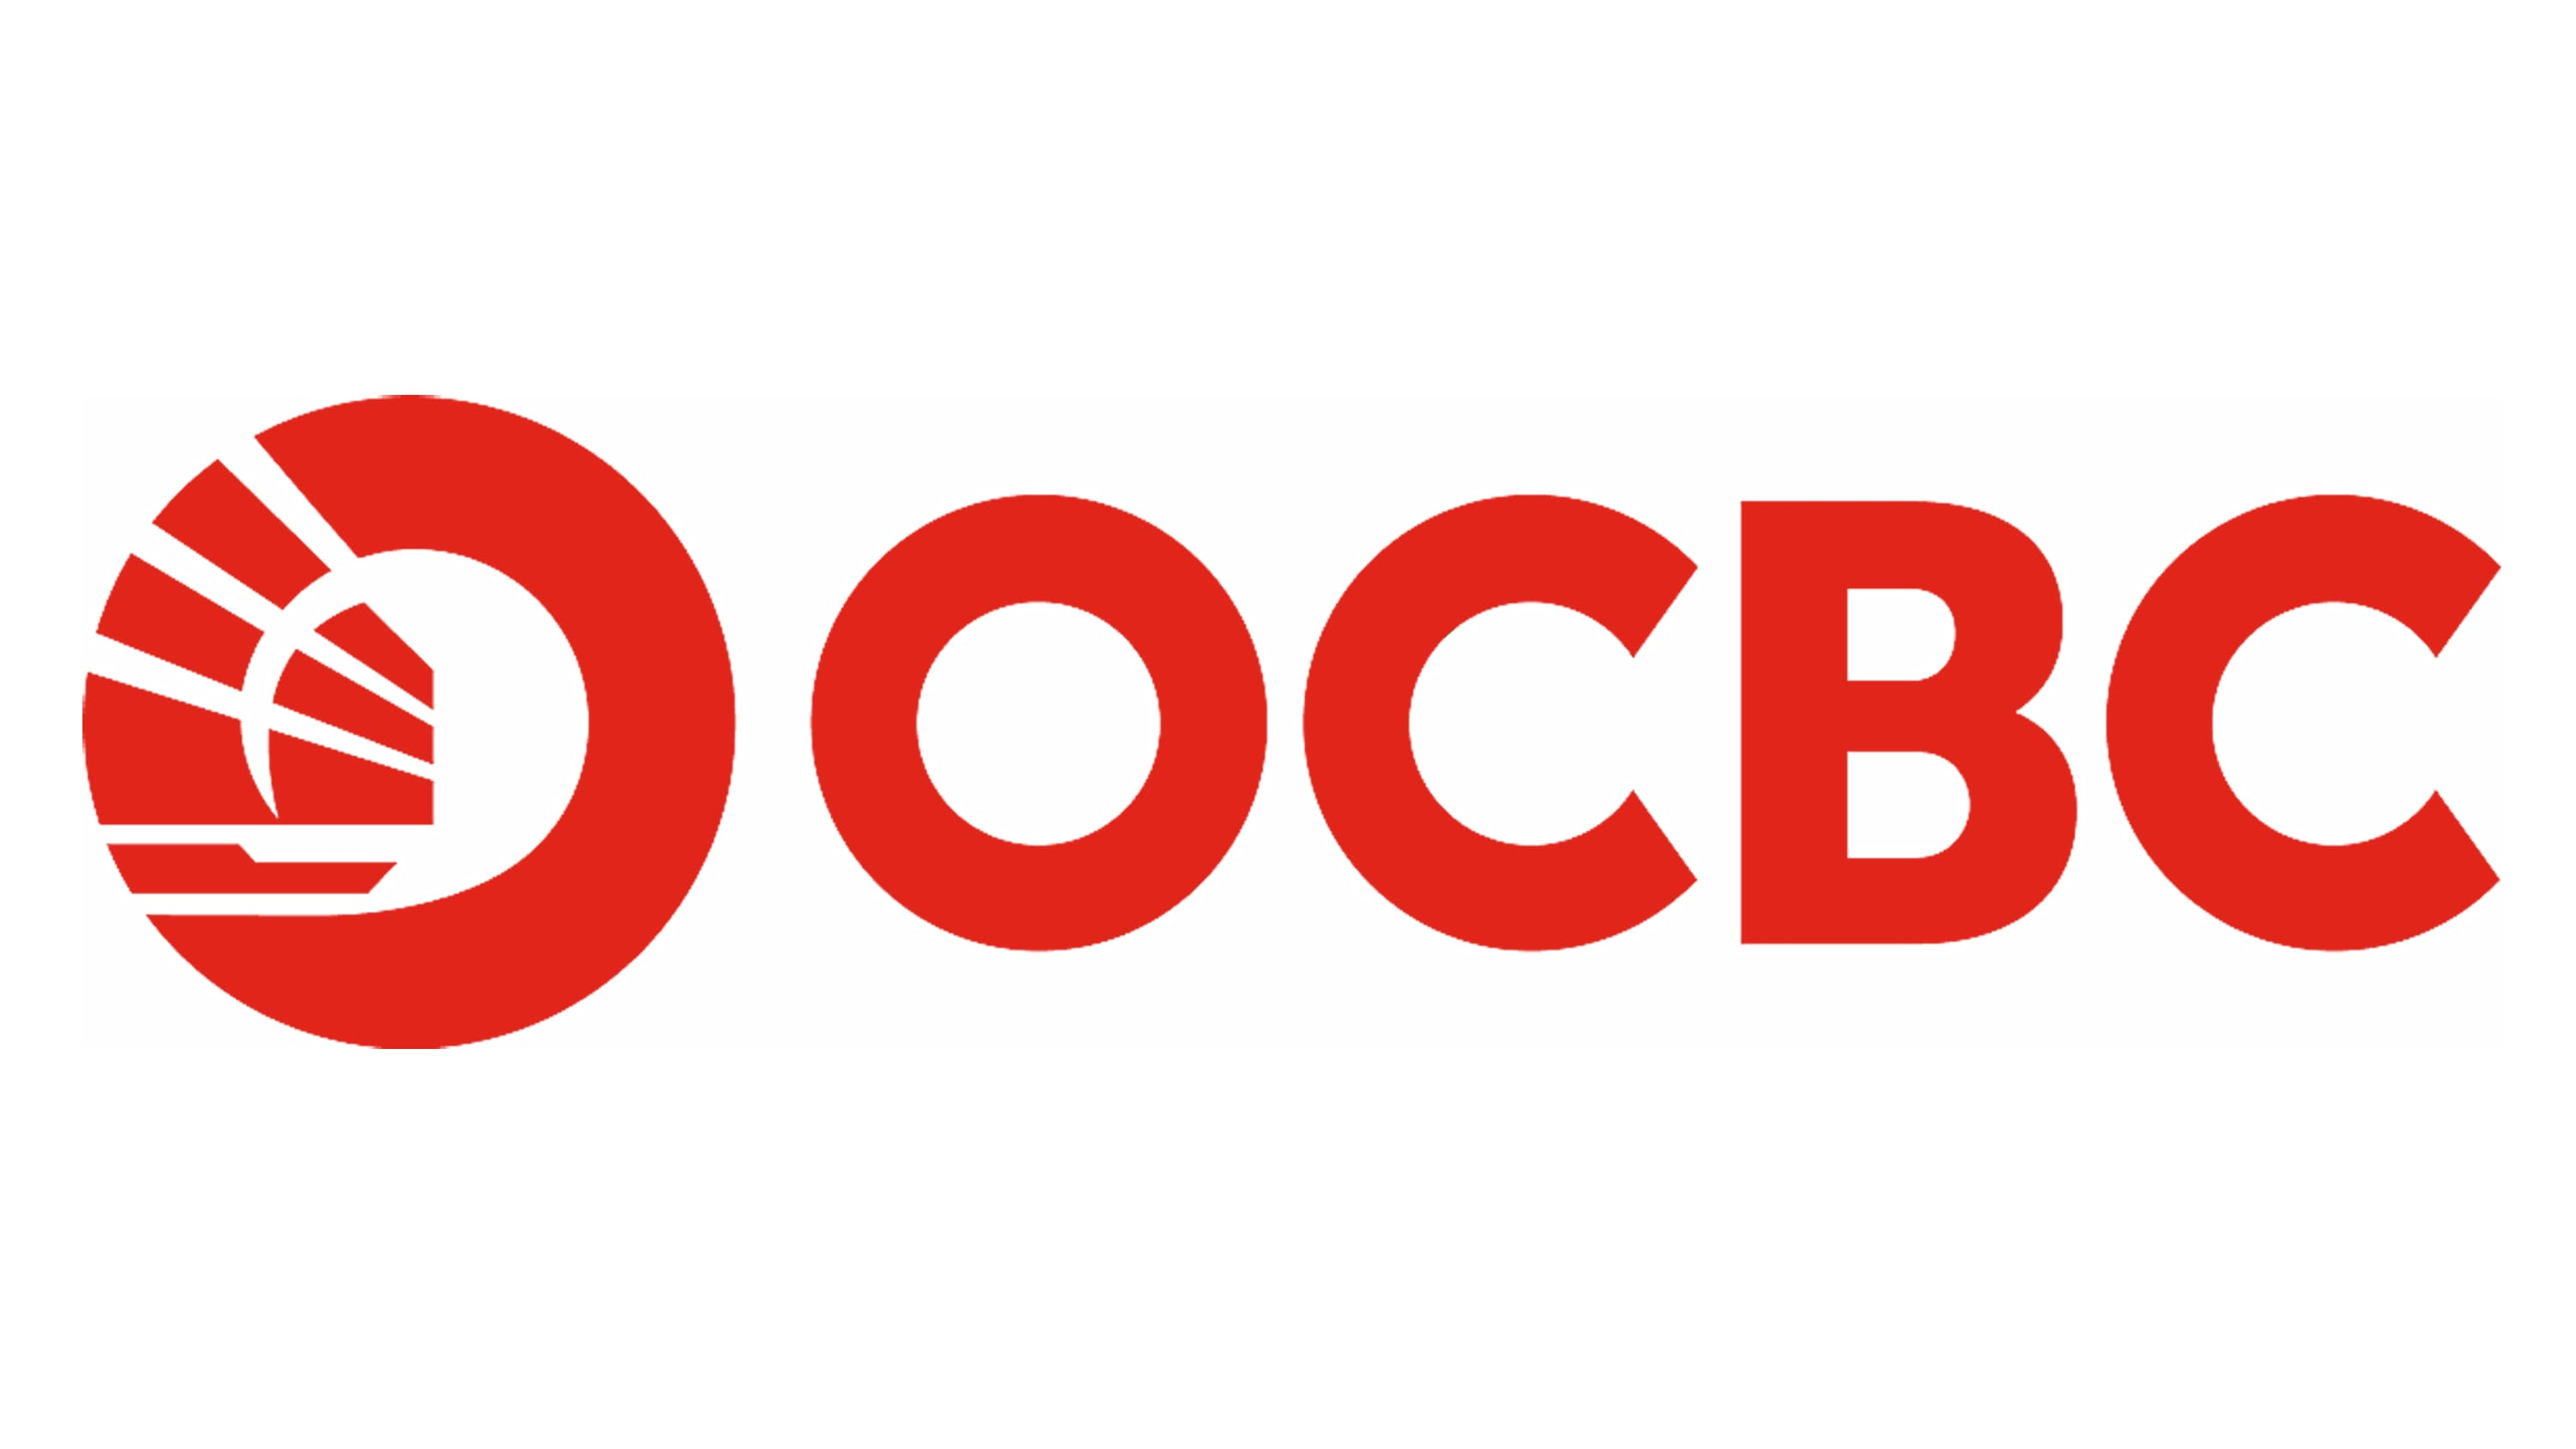 ocbc